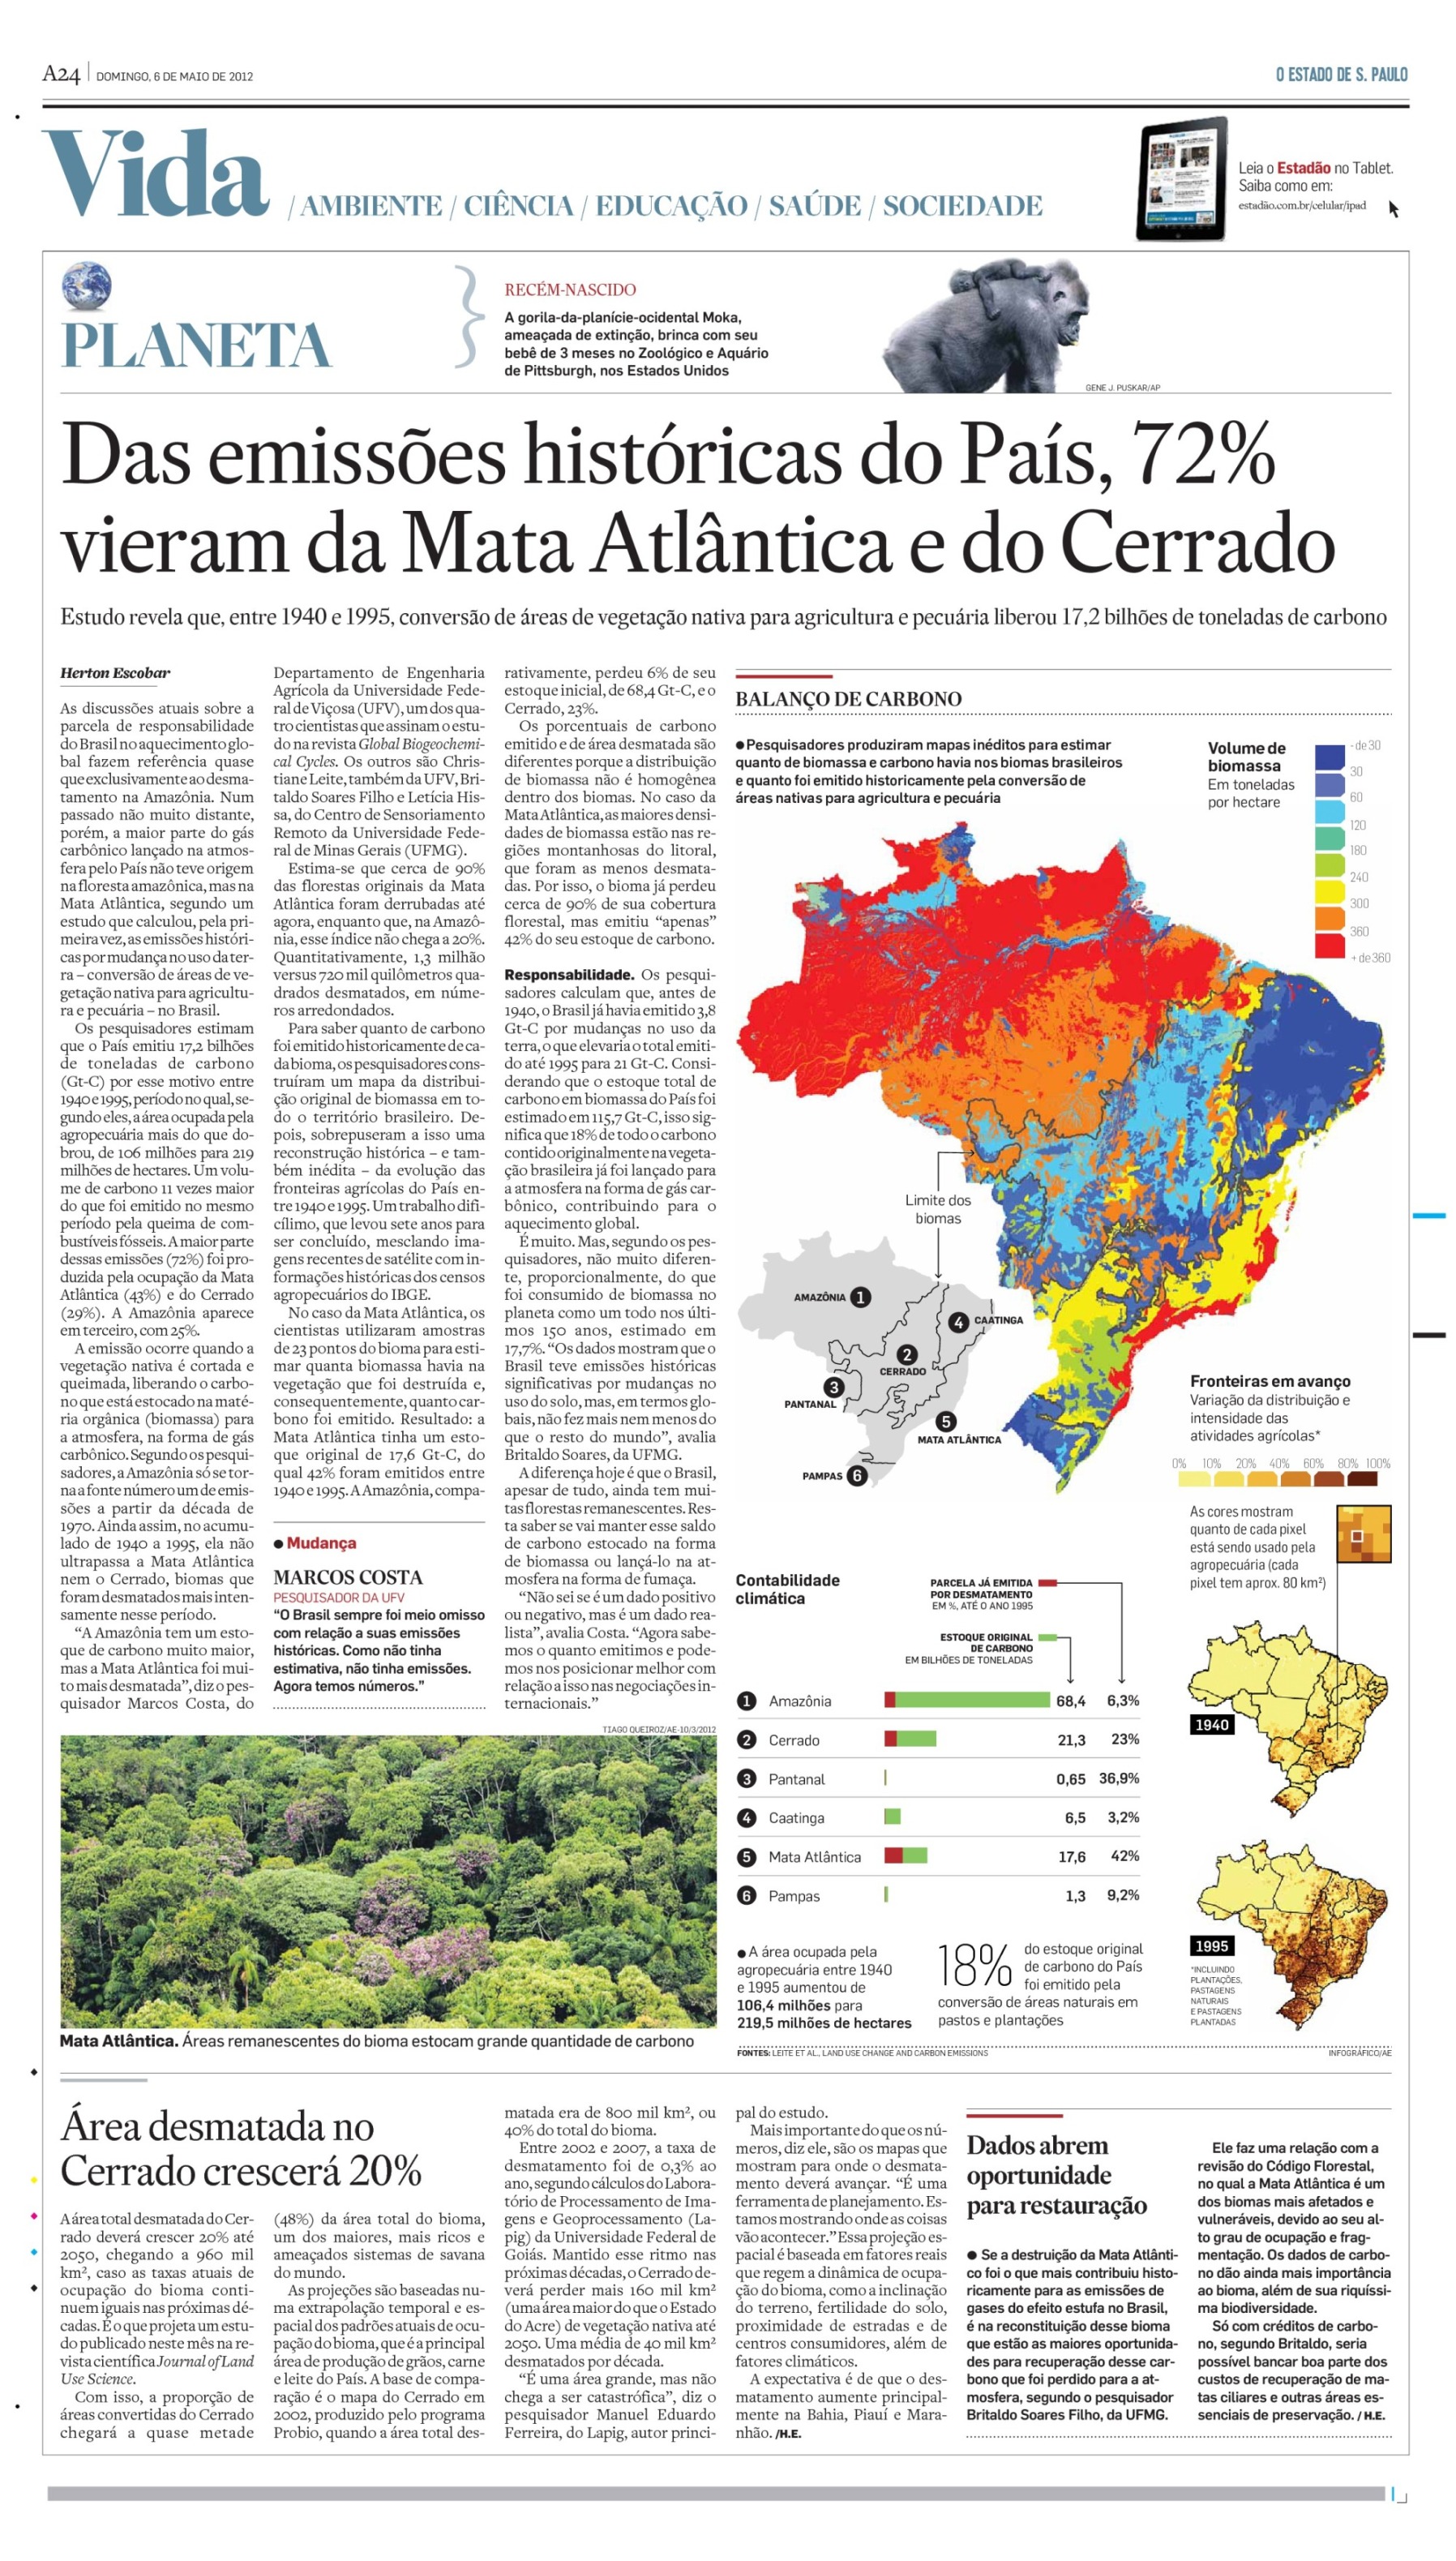 Das emissões históricas do Brasil, 72% vieram da Mata Atlântica e Cerrado